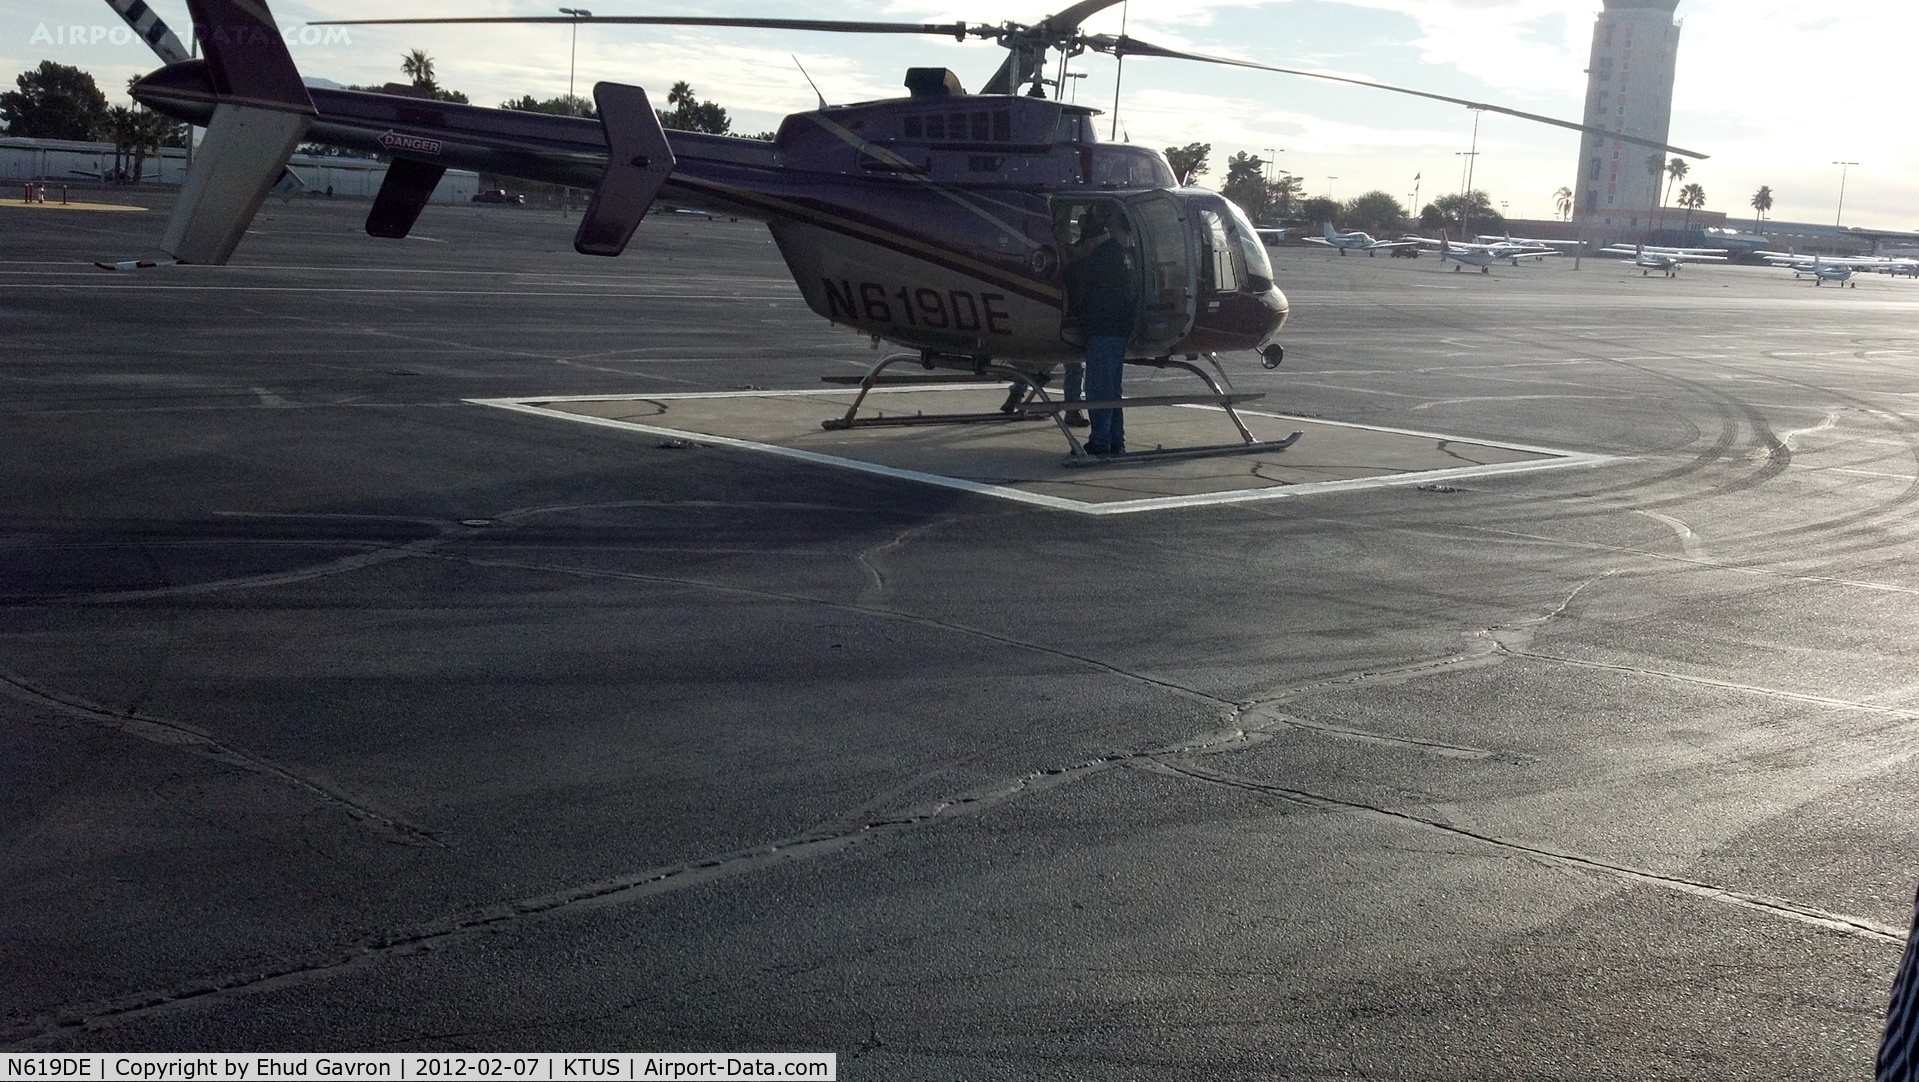 N619DE, 2000 Bell 407 C/N 53410, N619DE, DoD's 407, Tucson Helipad